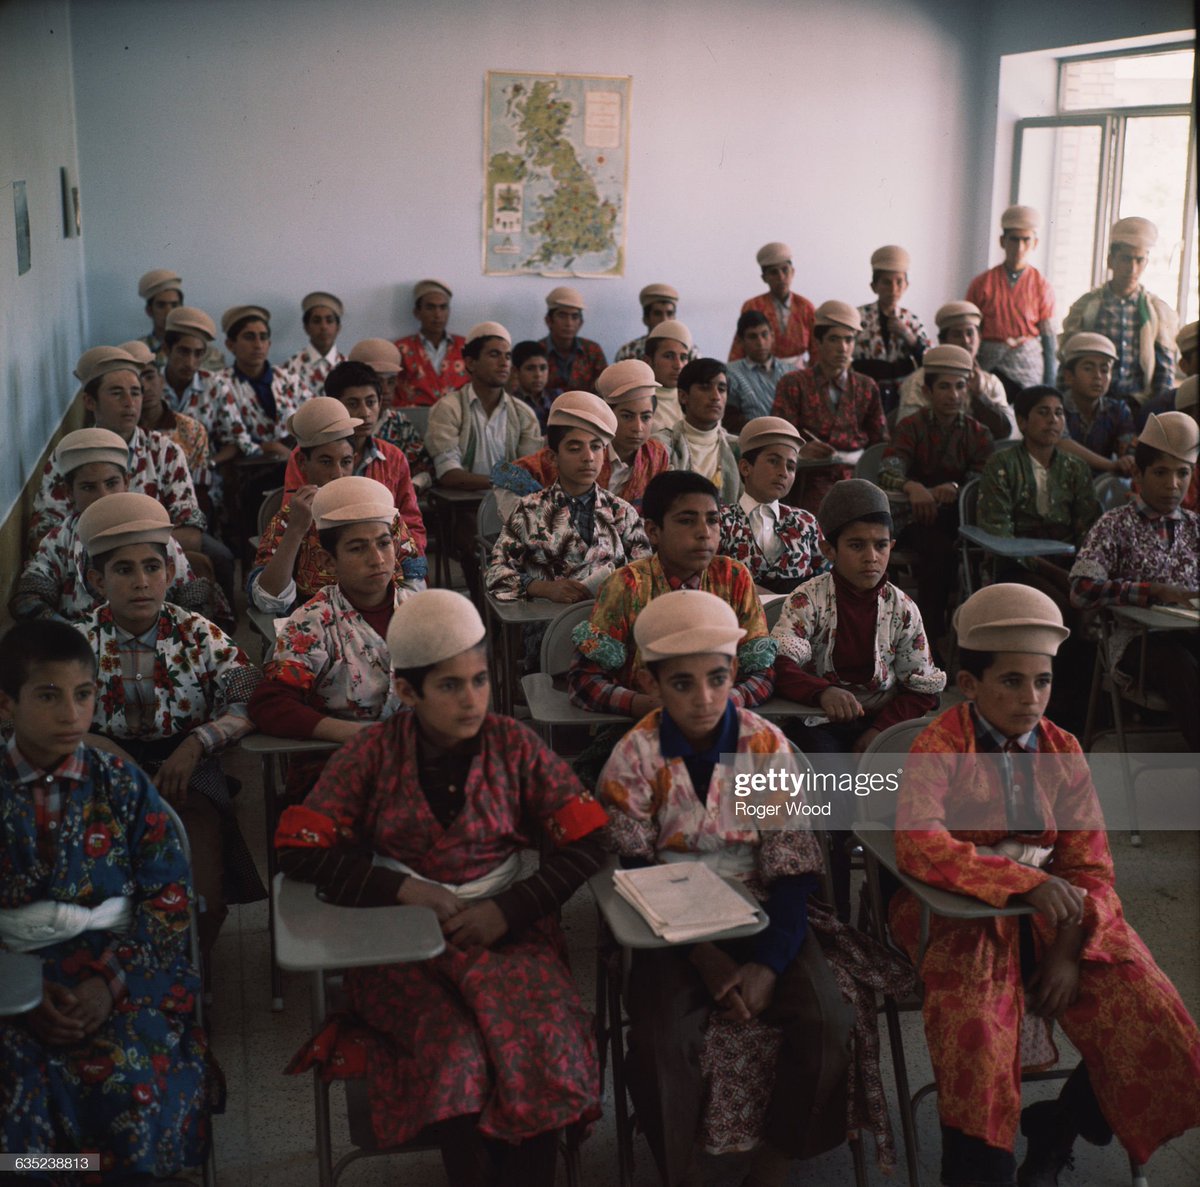 عکس جالب از کلاس درس ایل قشقایی در دهه ۴۰